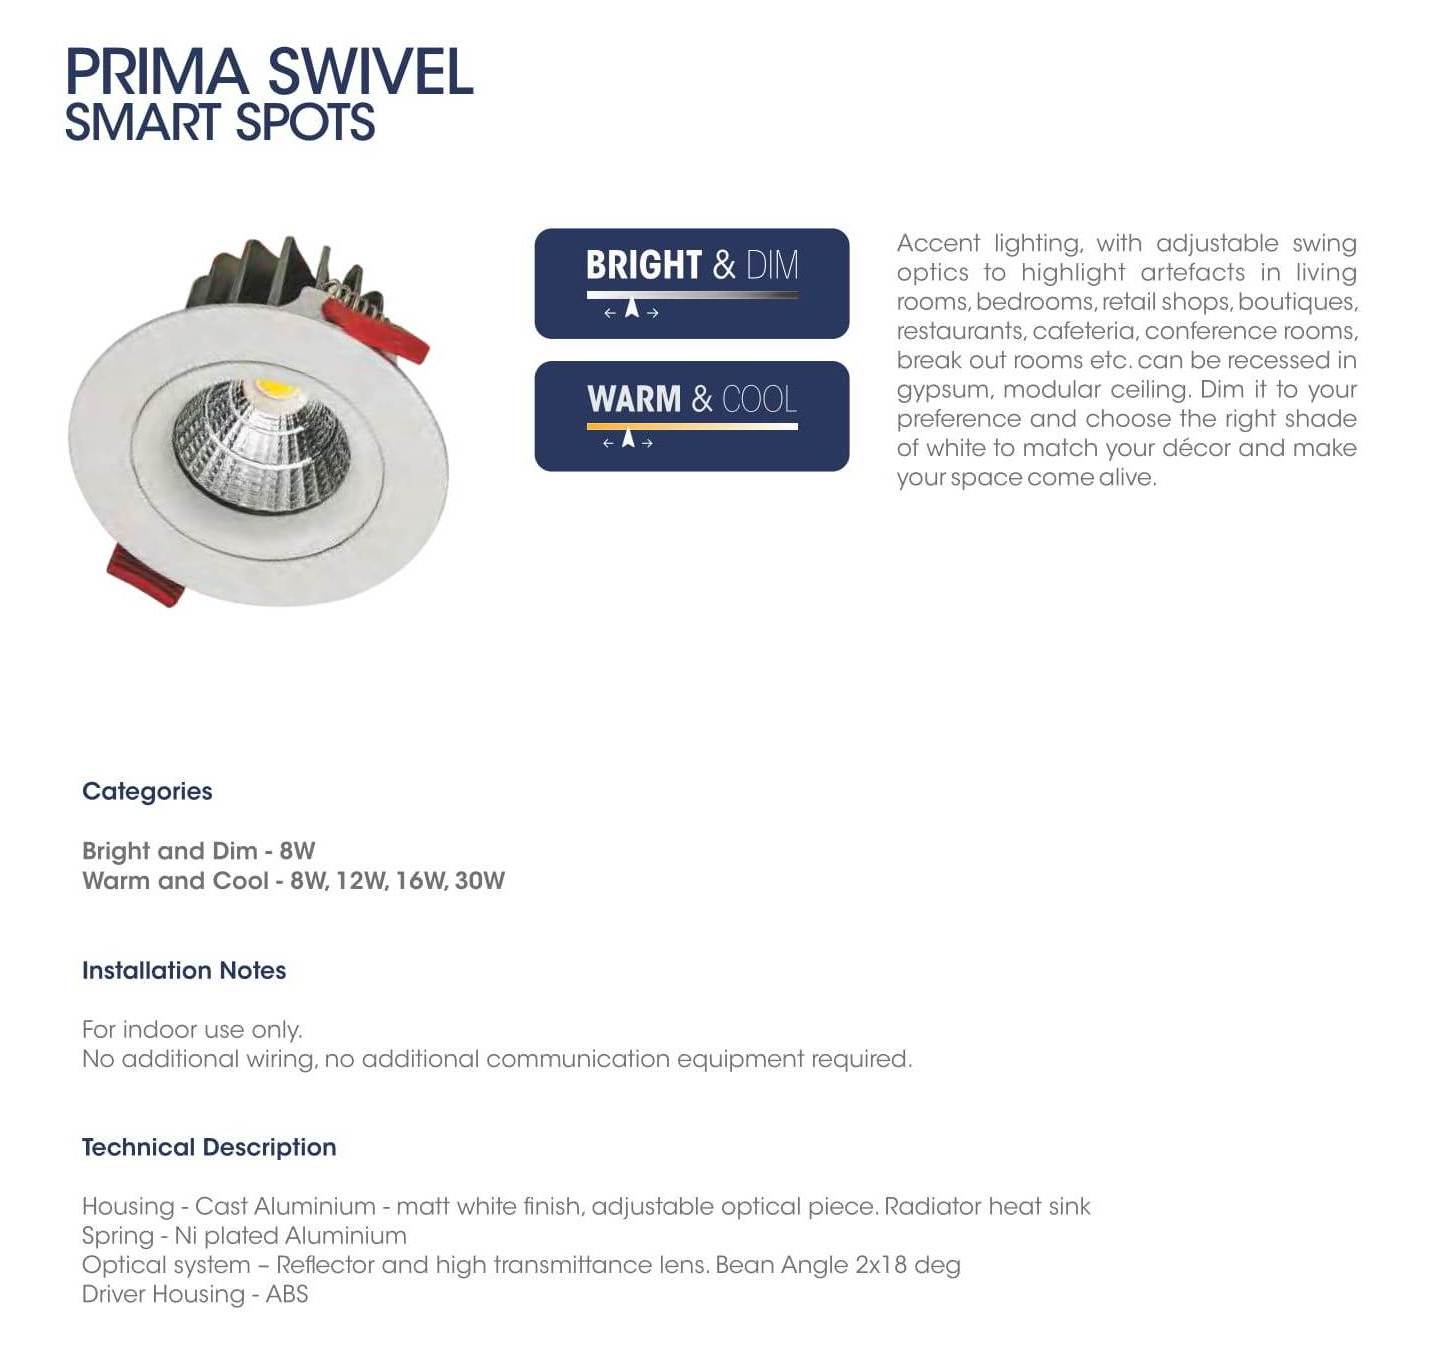 Prima Swivel Smart Spots